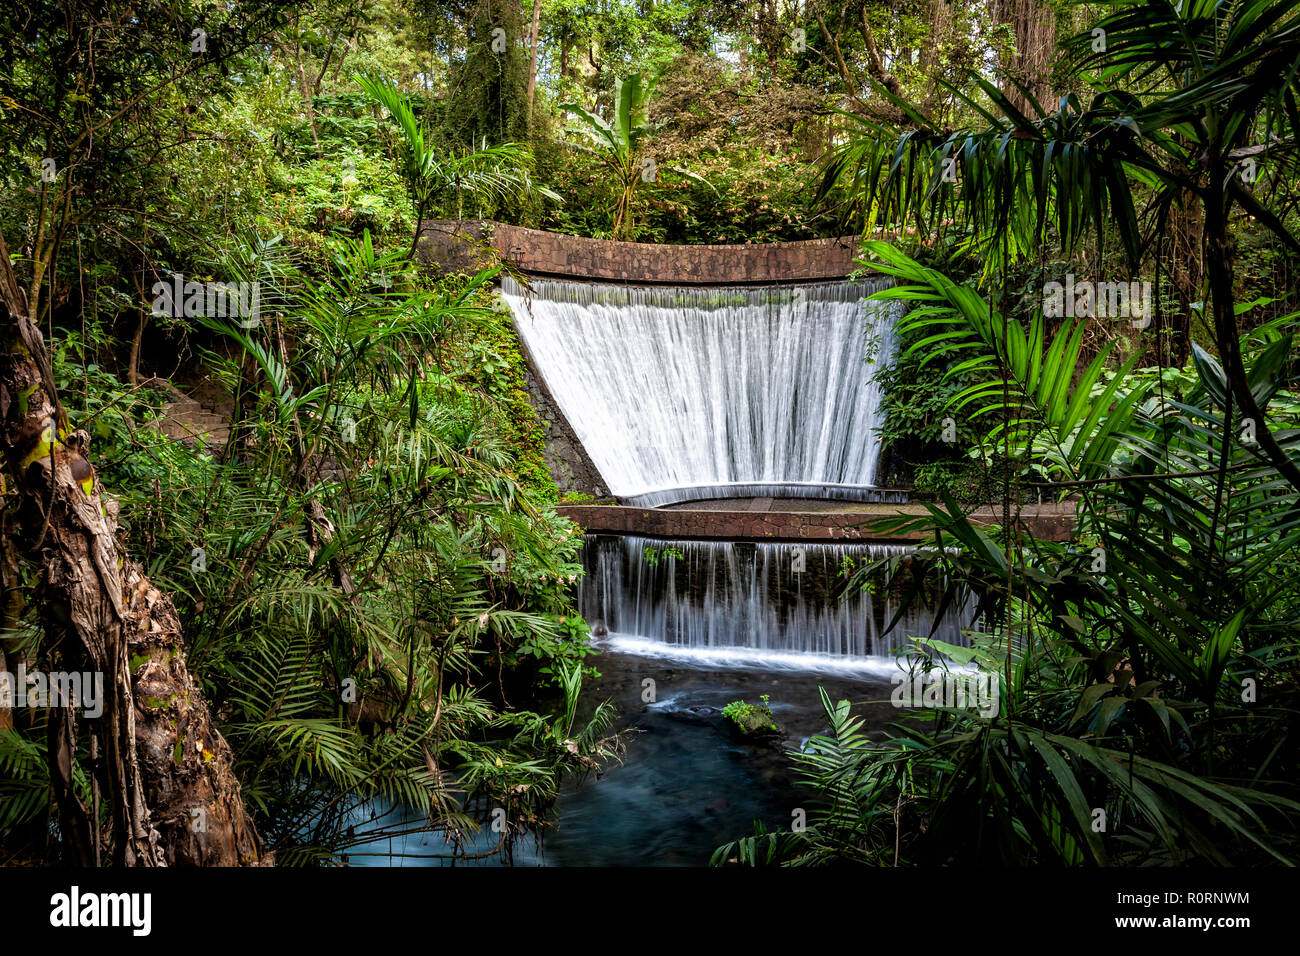 The Velo de Novia Waterfalls of the Cupatitzio River in Uruapan, Michoacan, Mexico. Stock Photo